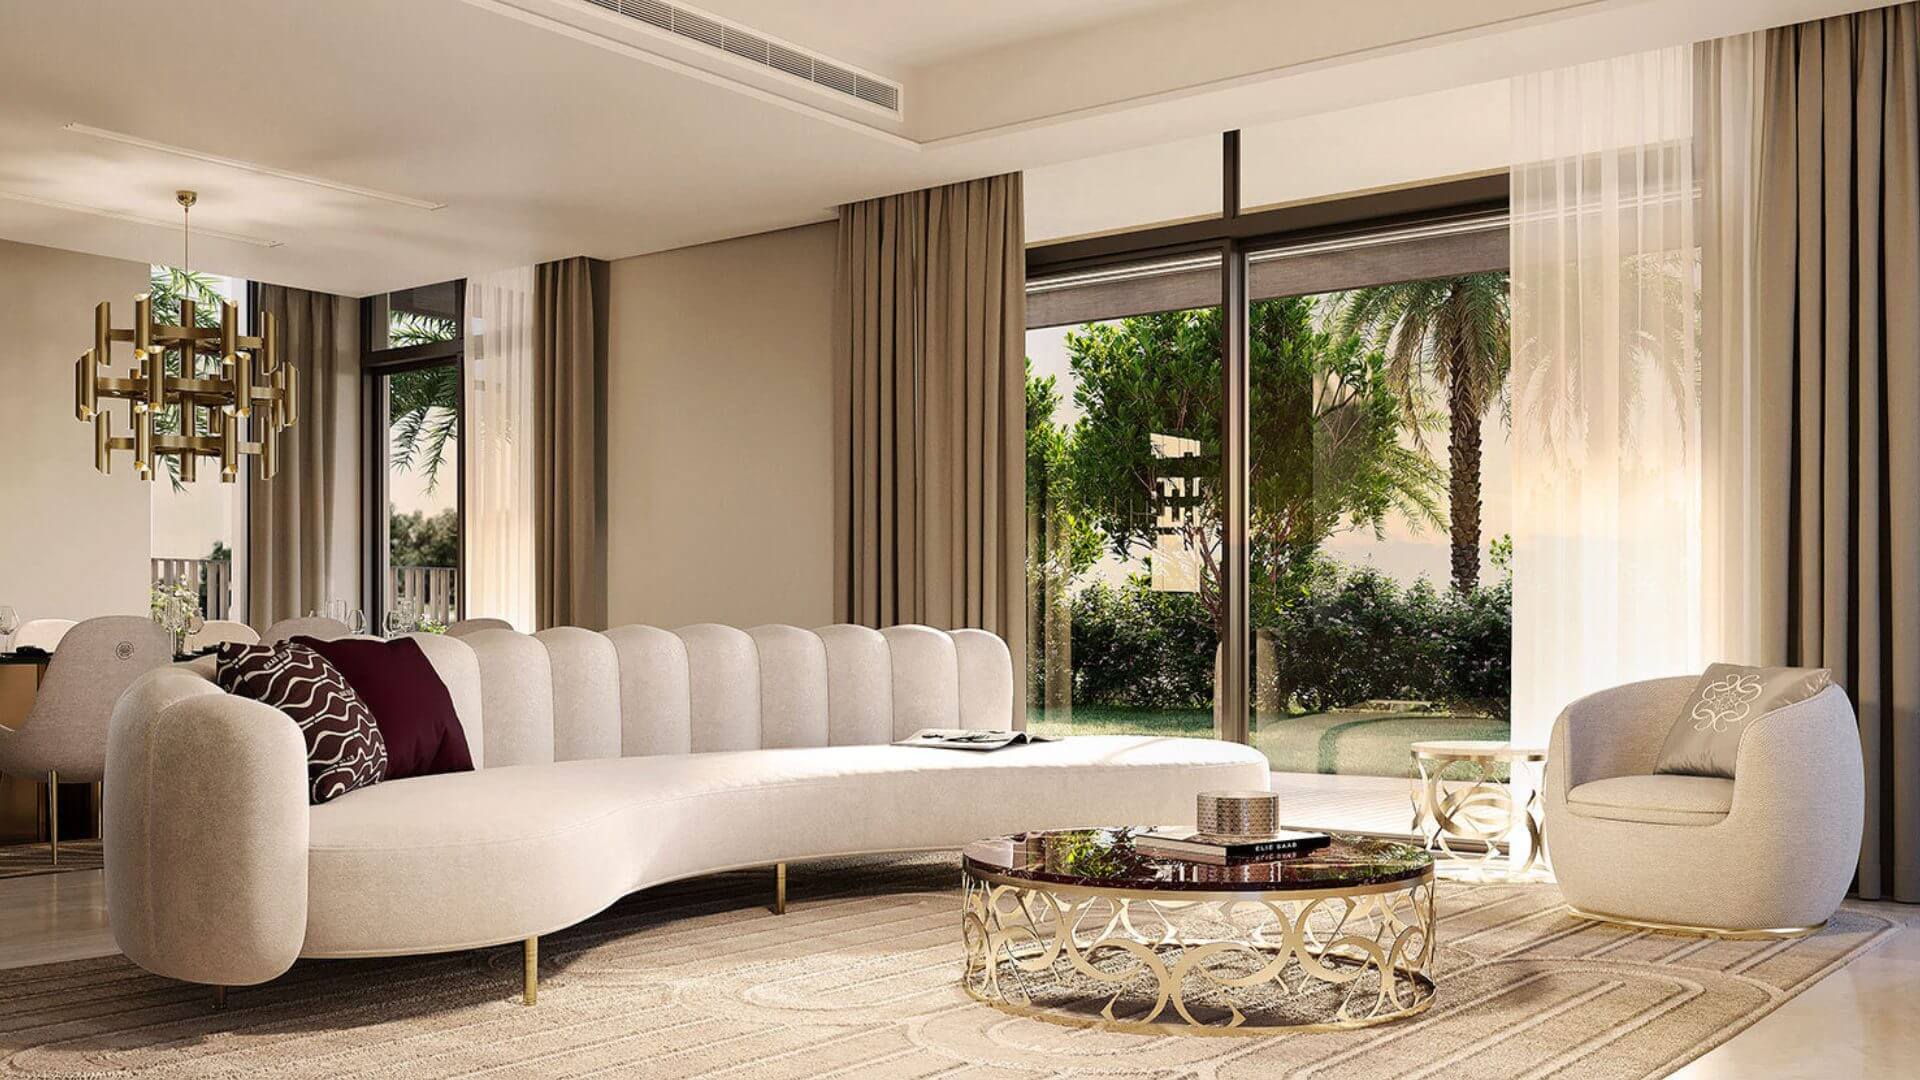 ELIE SAAB by Emaar Properties in Arabian Ranches 3, Dubai, UAE7